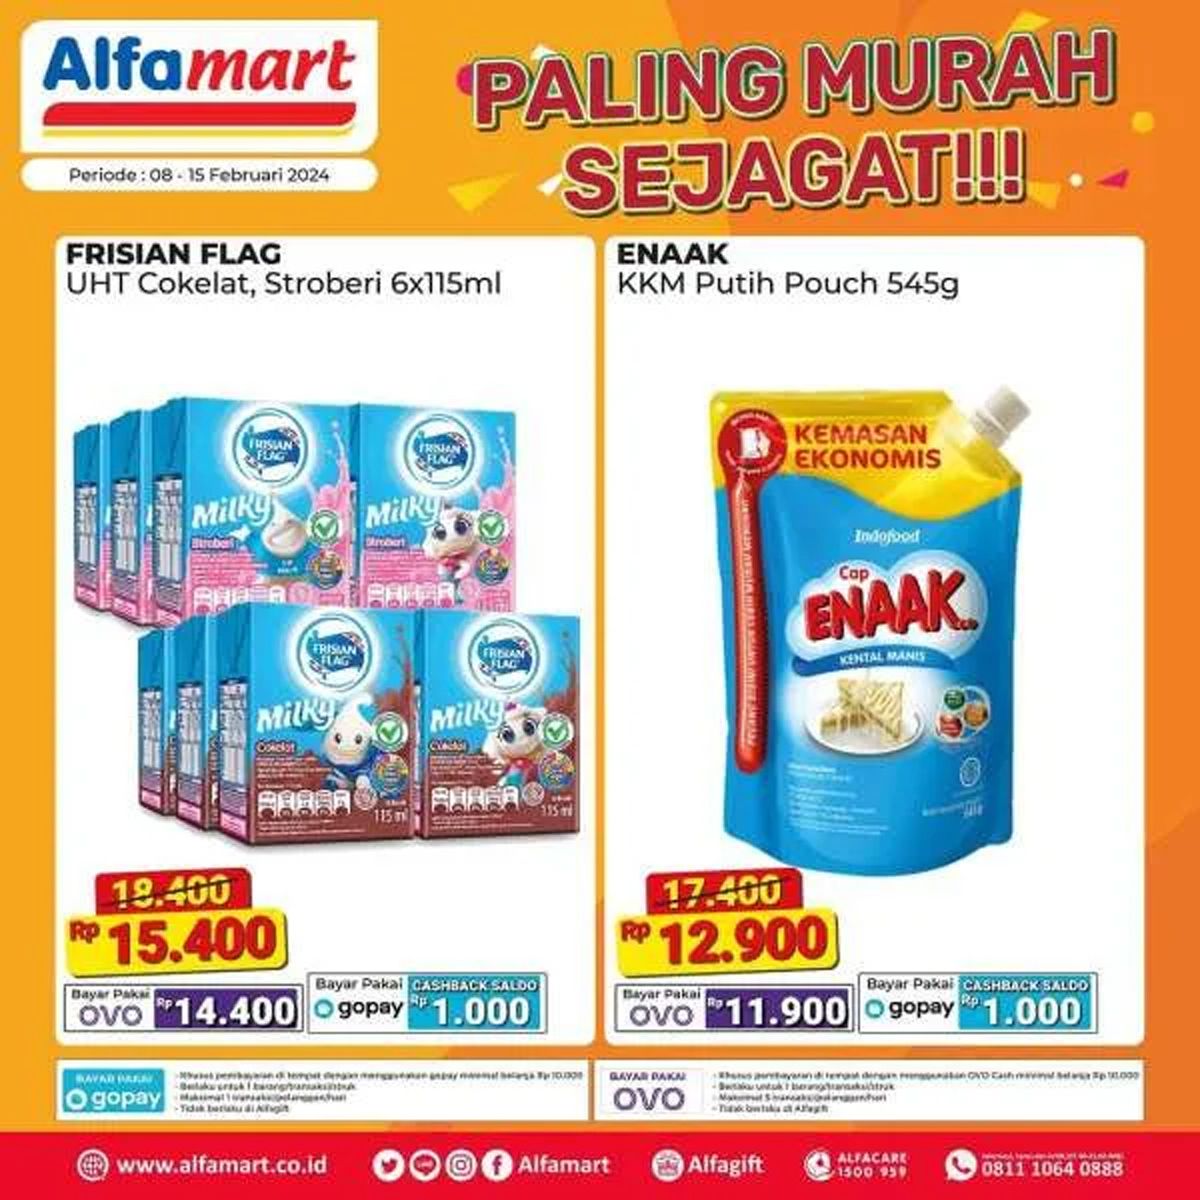  Katalog 2 produk yang dijual dalam program promo Alfamart Paling Murah Sejagat periode 8 - 15 Februari 2024./Instagram Alfamart.